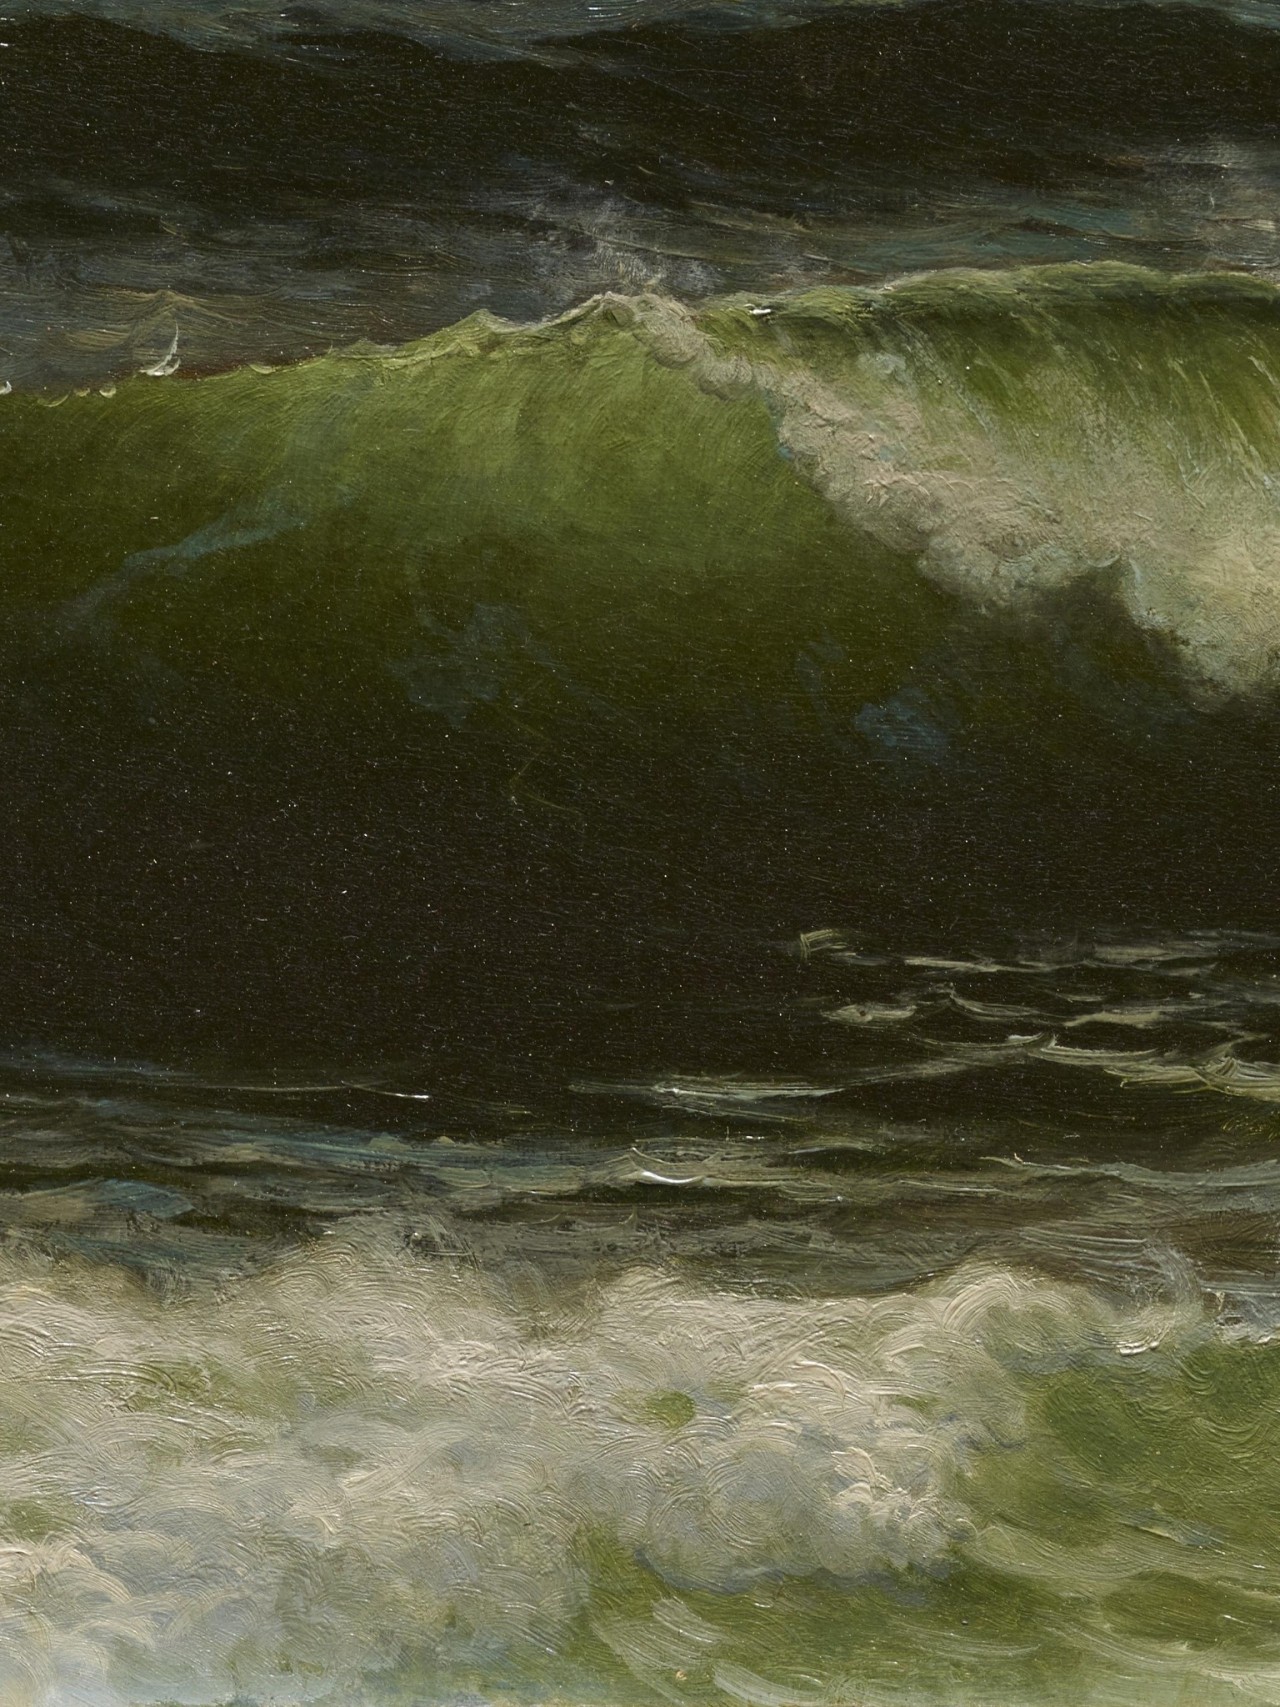 klassizismus:Details: Seascape, Alfred Thompson Bricher, 1890